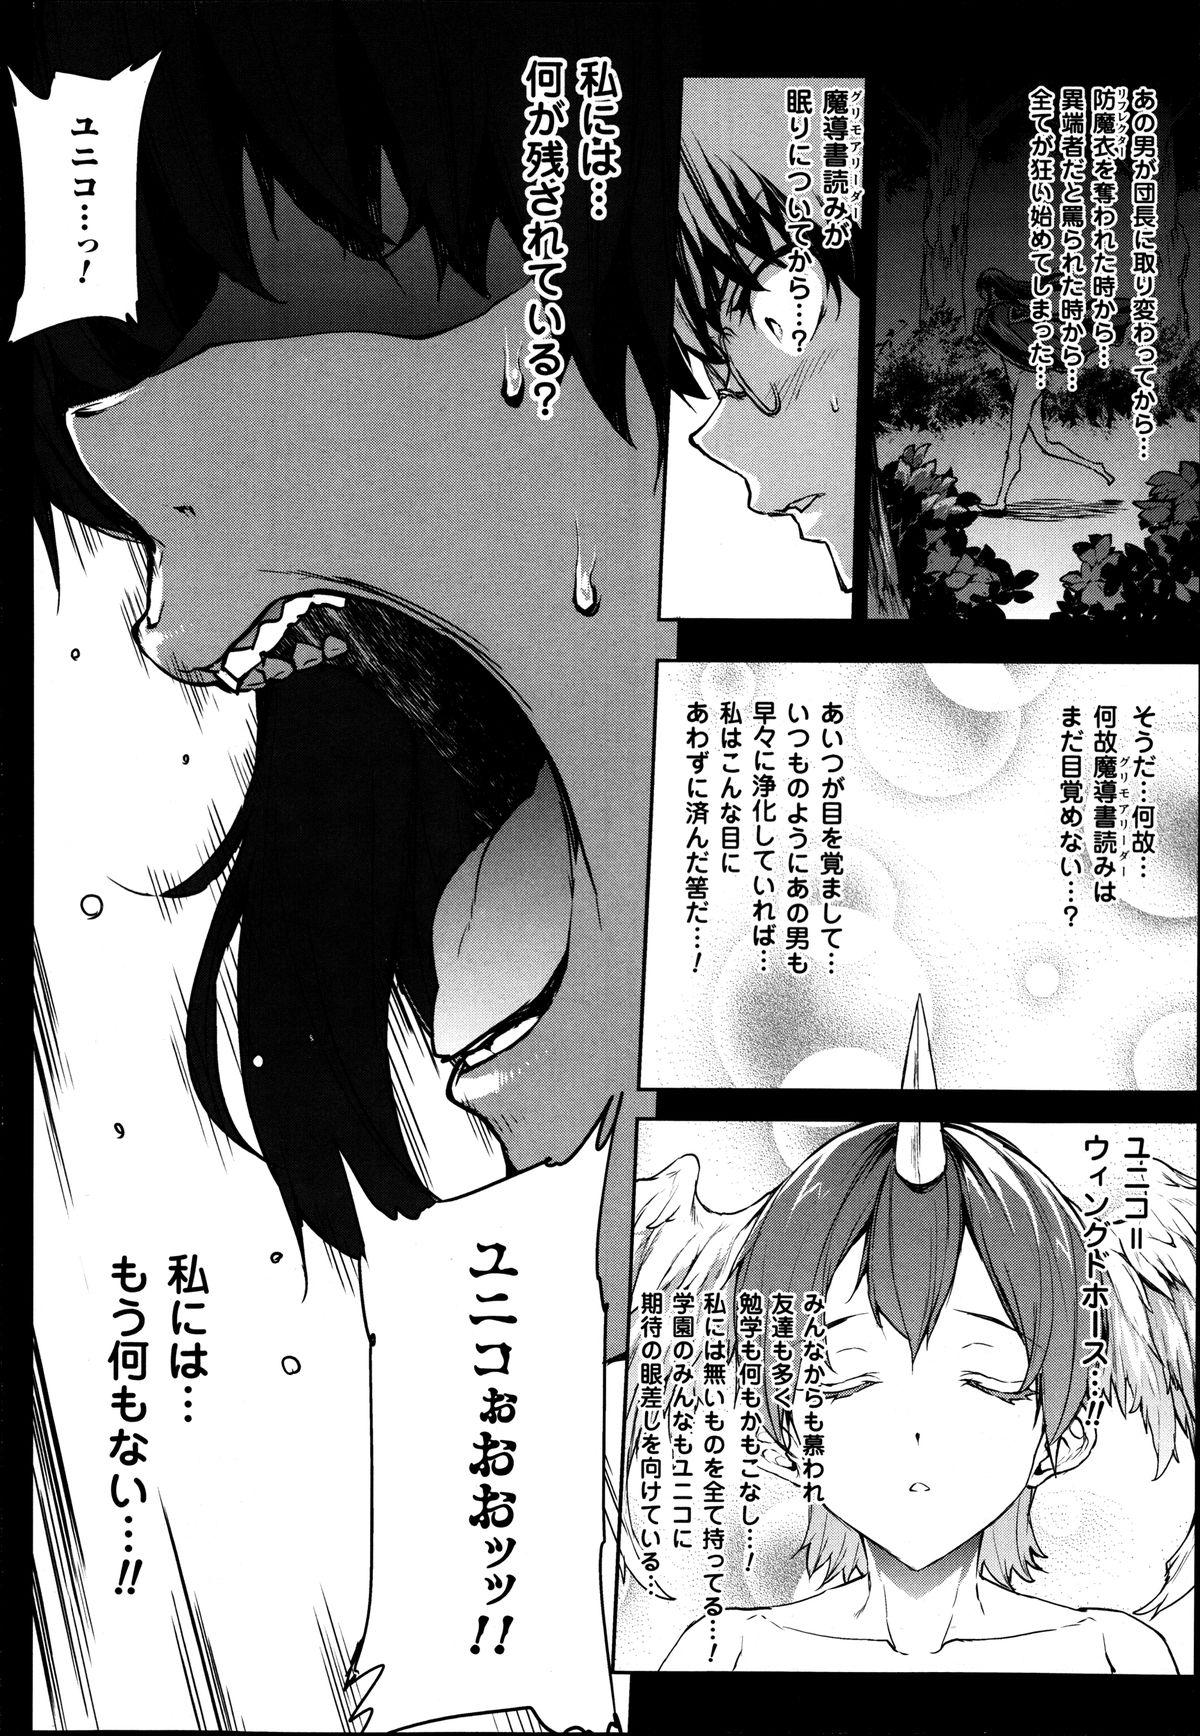 [Erect Sawaru] Shinkyoku no Grimoire -PANDRA saga 2nd story- Ch. 7-12 176